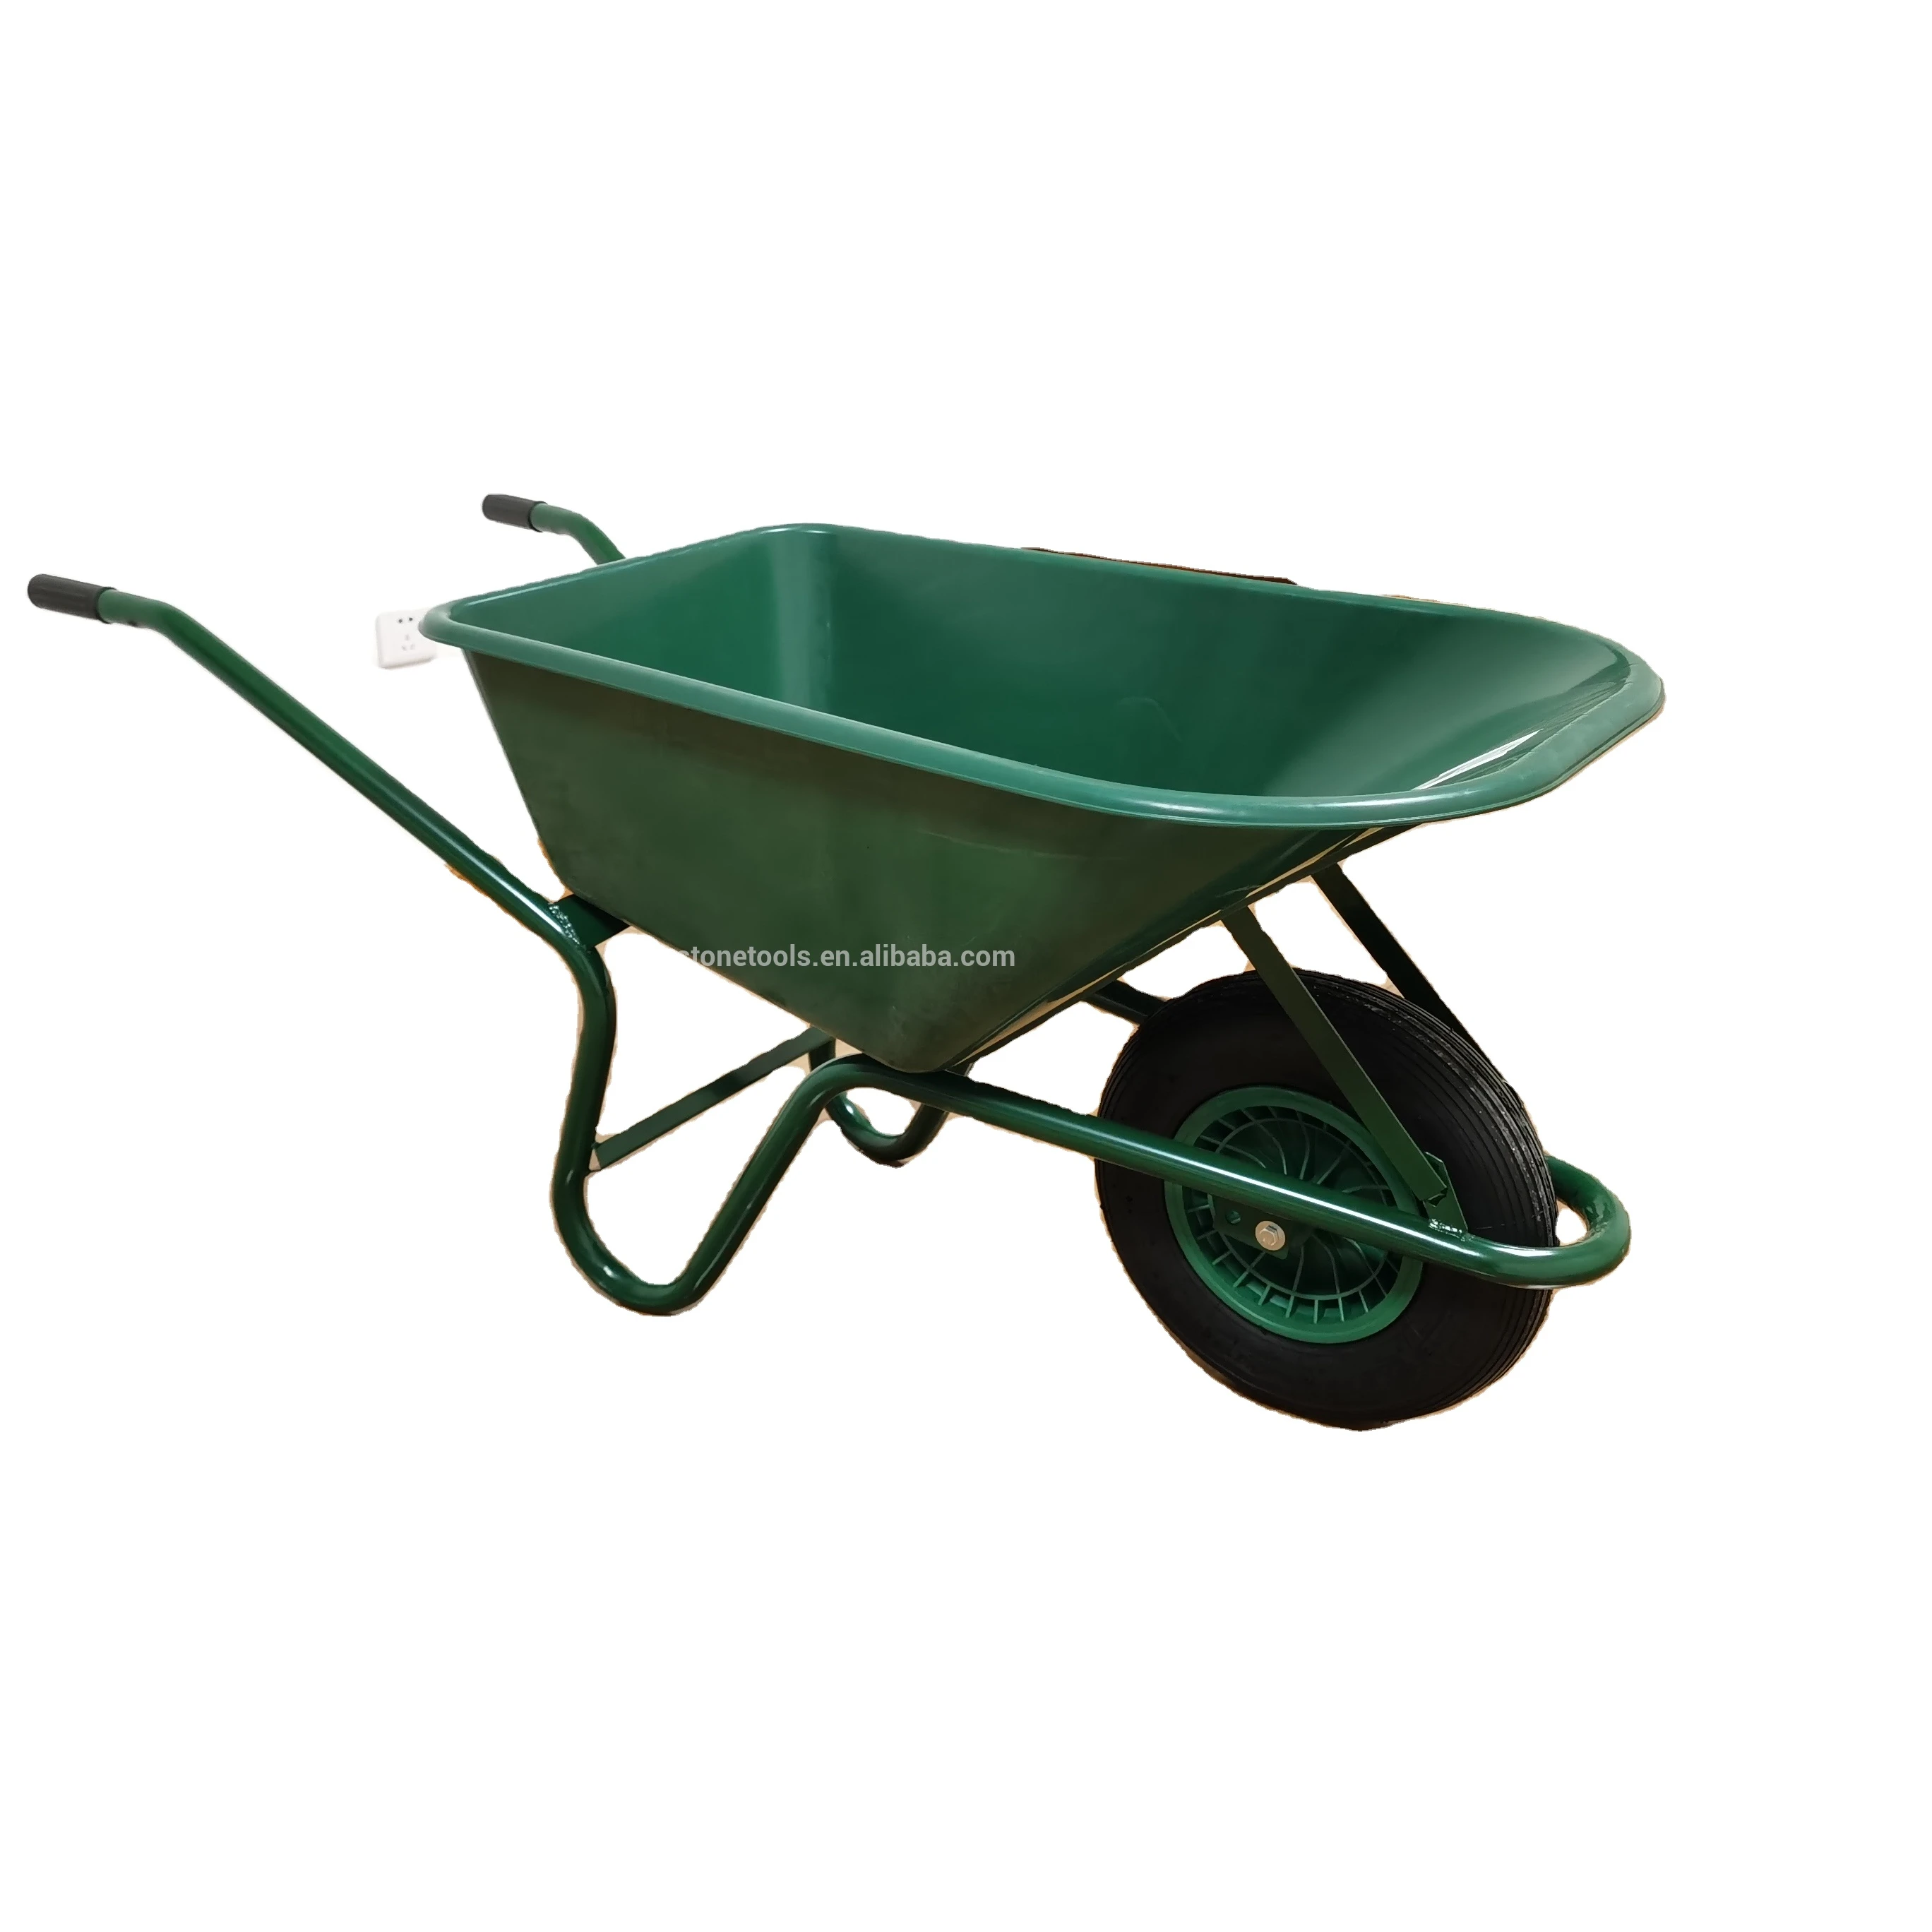 Plastic Tray Bucket Garden and Farm wheelbarrow for Europe Market WB6424S